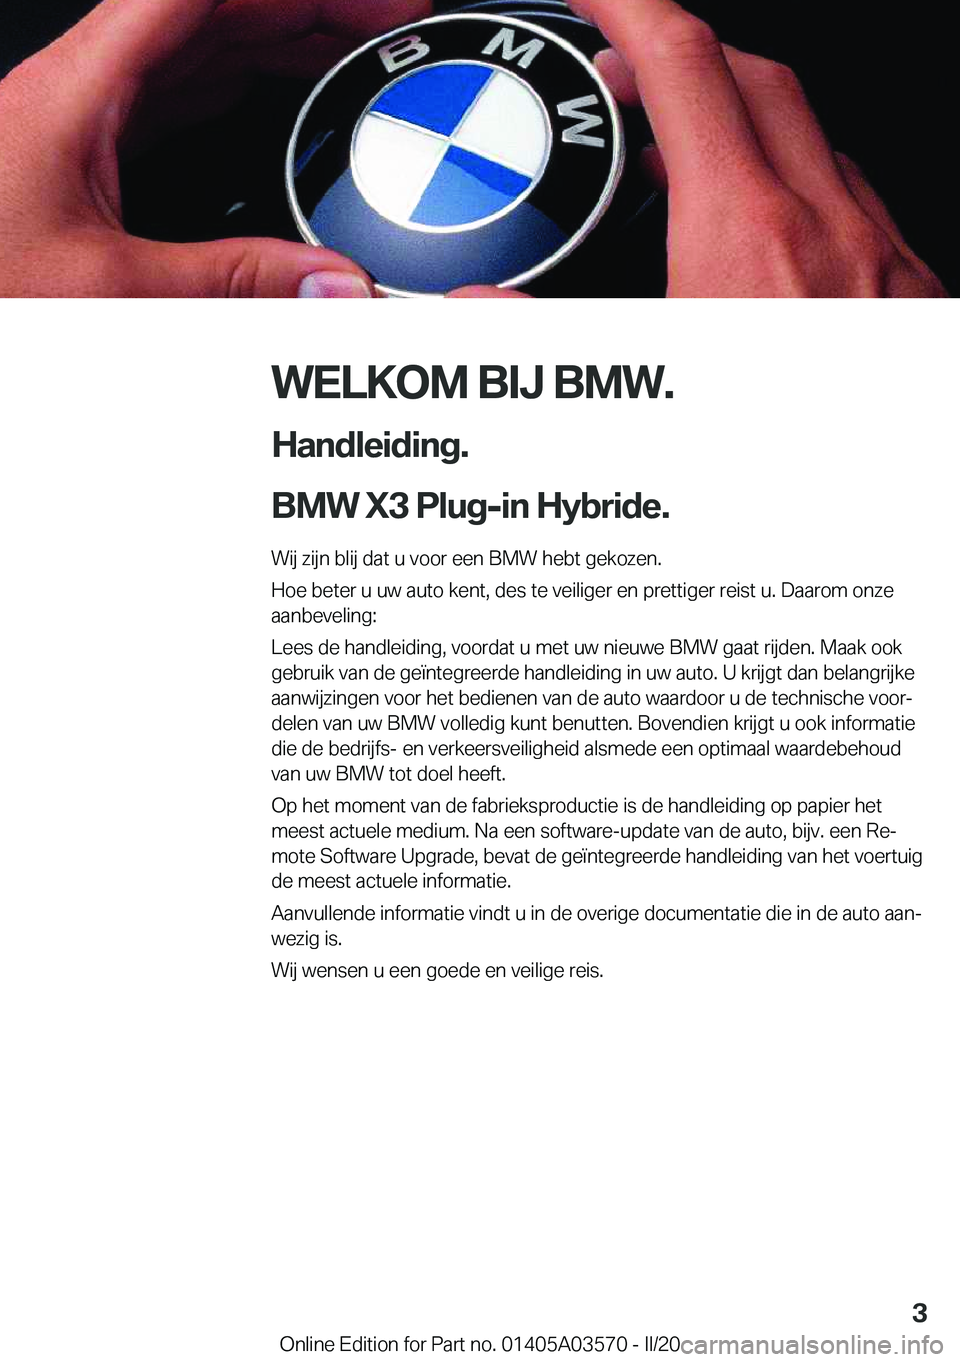 BMW X3 PLUG IN HYBRID 2020  Instructieboekjes (in Dutch) �W�E�L�K�O�M��B�I�J��B�M�W�.
�H�a�n�d�l�e�i�d�i�n�g�.
�B�M�W��X�3��P�l�u�g�-�i�n��H�y�b�r�i�d�e�. �W�i�j��z�i�j�n��b�l�i�j��d�a�t��u��v�o�o�r��e�e�n��B�M�W��h�e�b�t��g�e�k�o�z�e�n�.�H�o�